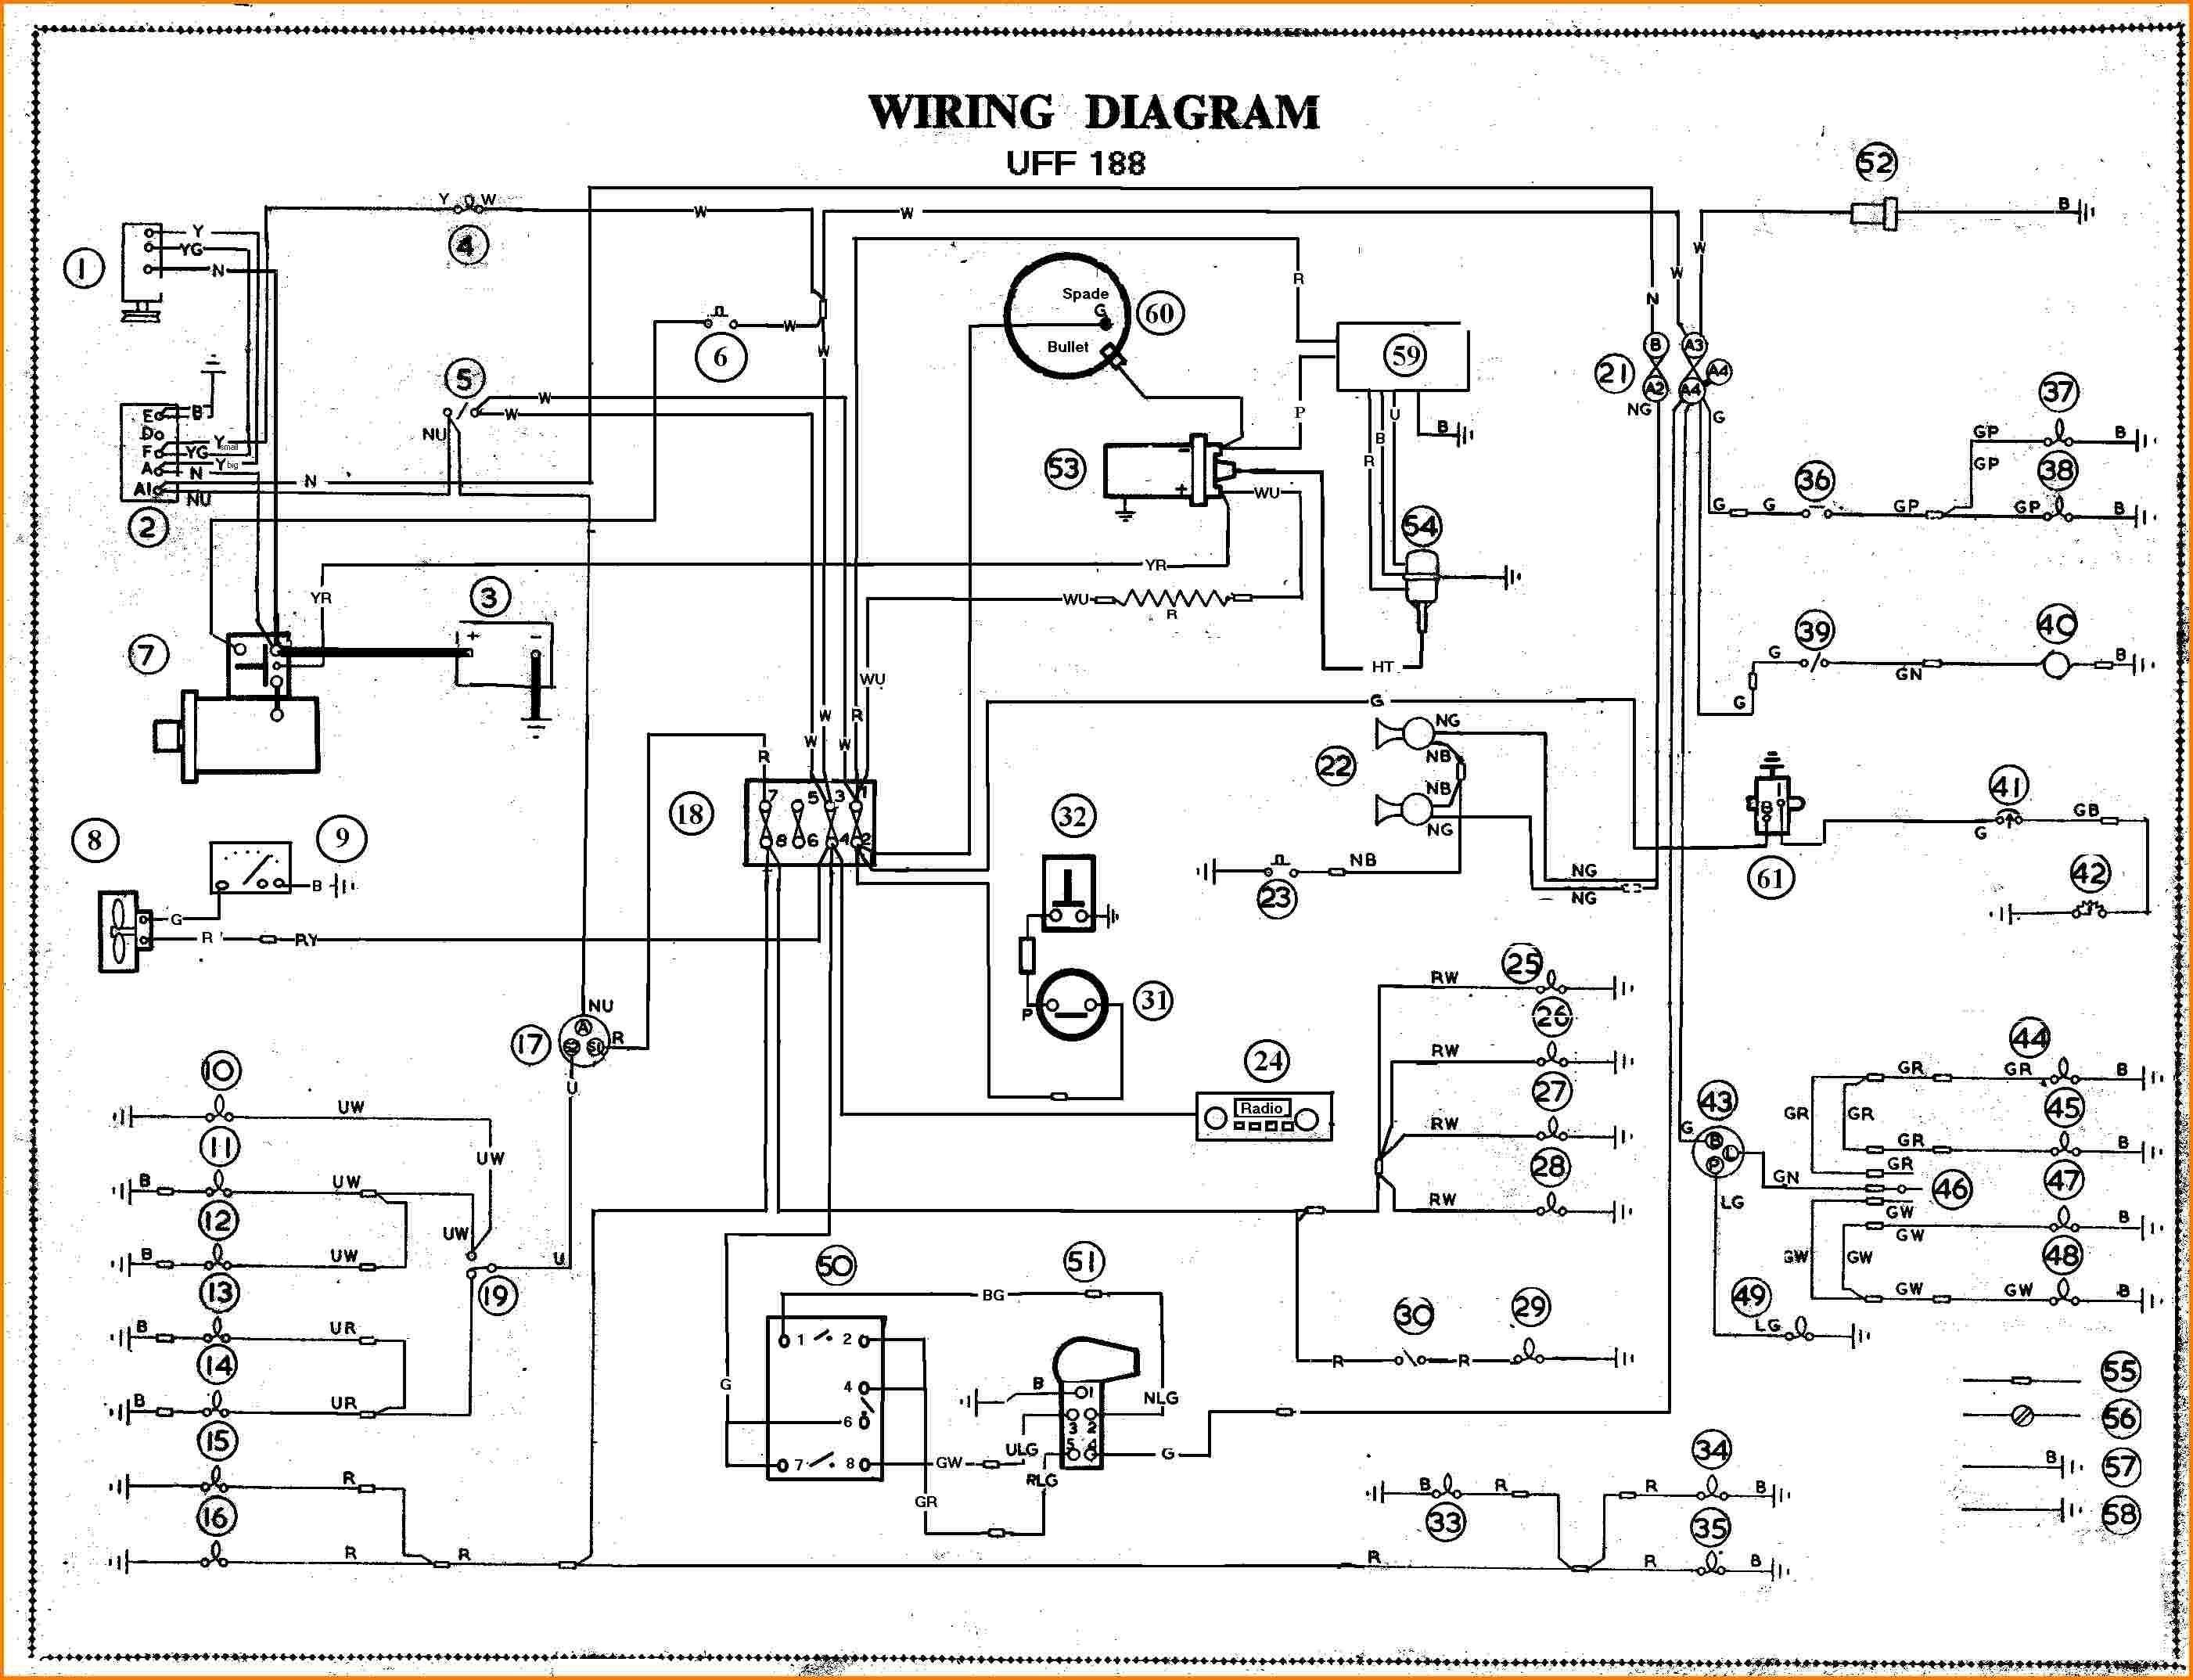 Circuit Diagram Maker Circuit Diagram Program Wiring Diagrams